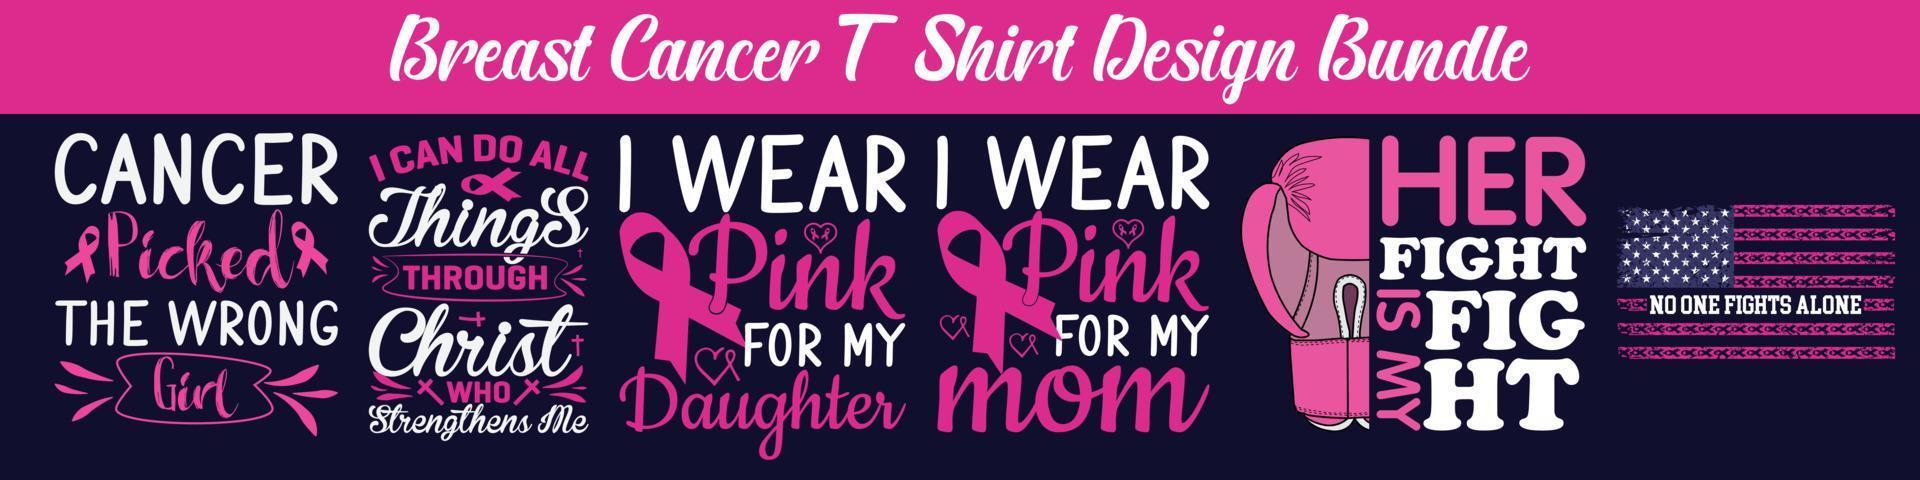 Breast Cancer T-Shirt Design Bundle, design for print like t-shirt, mug, frame, breast cancer day, Breast Cancer t shirt design, merchandise lettering design vector